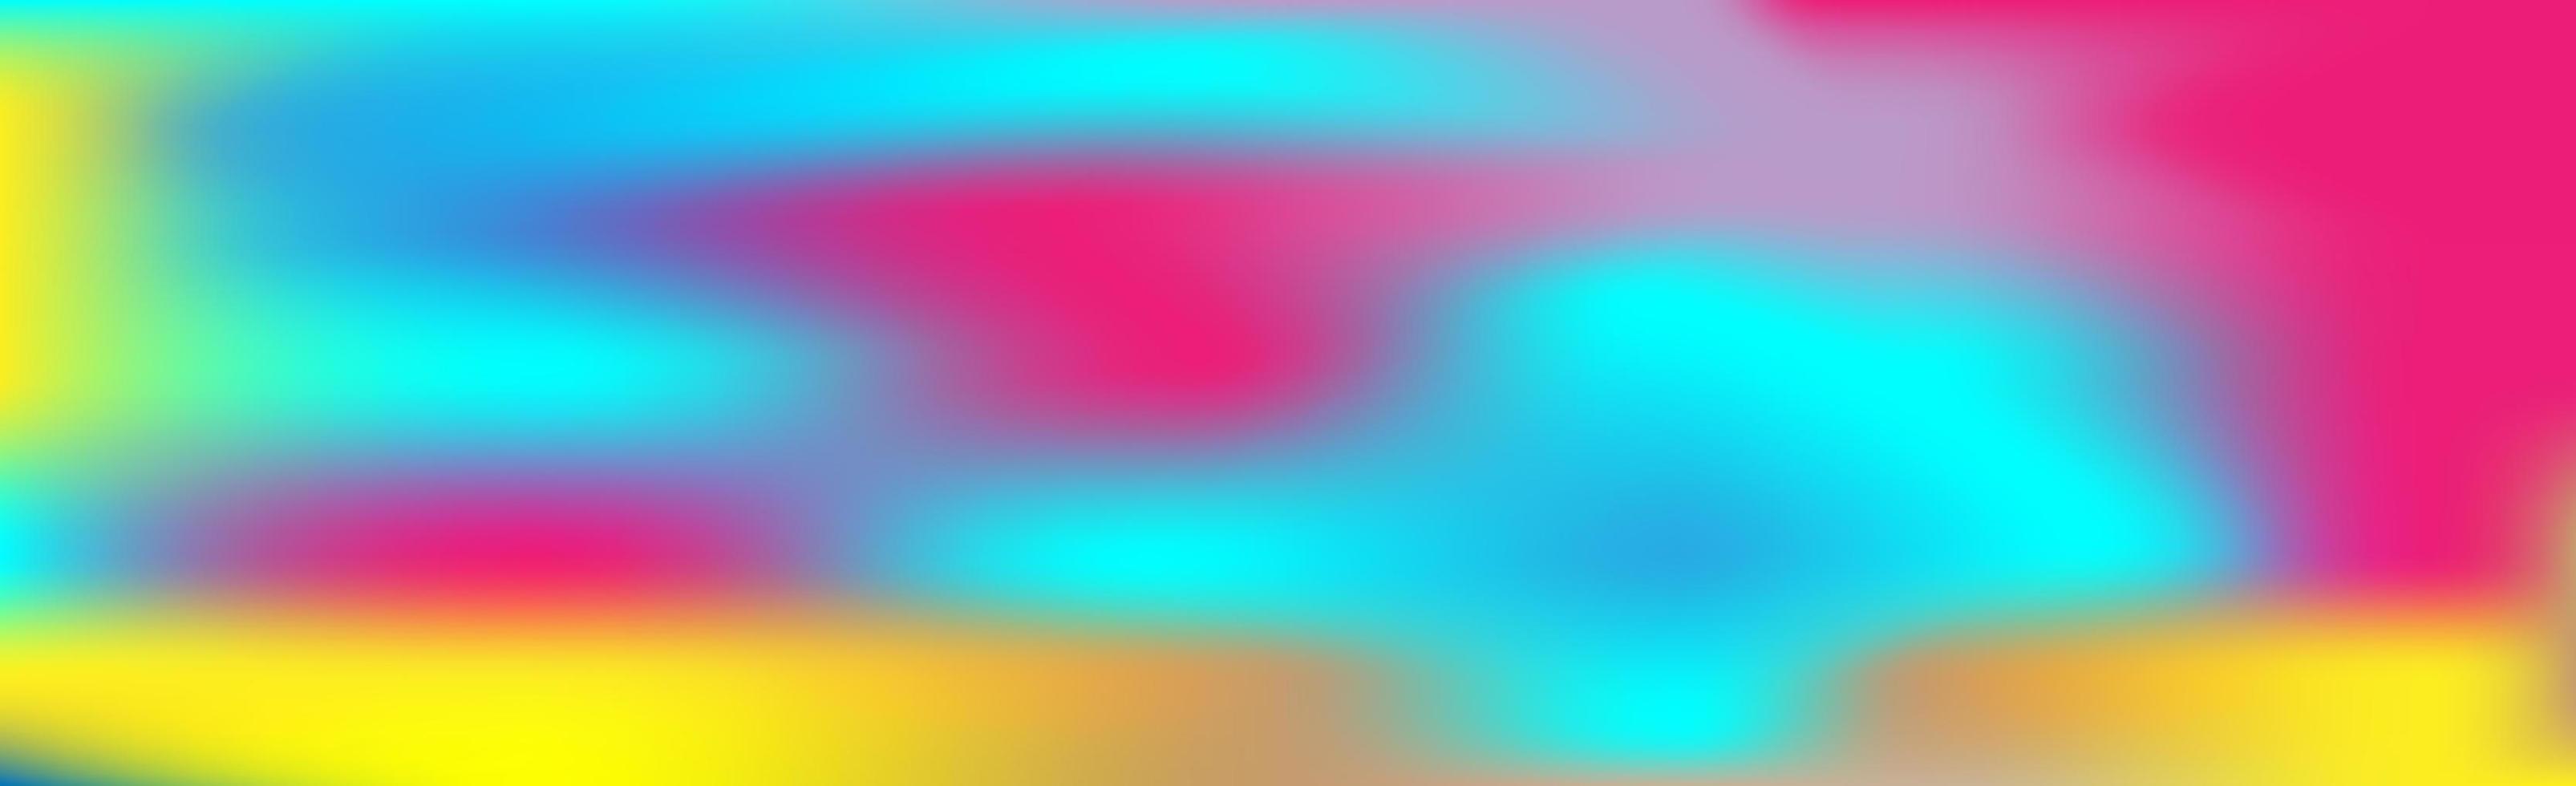 desfocado grande panorâmica de verão fundo gradiente multicolorido vetor